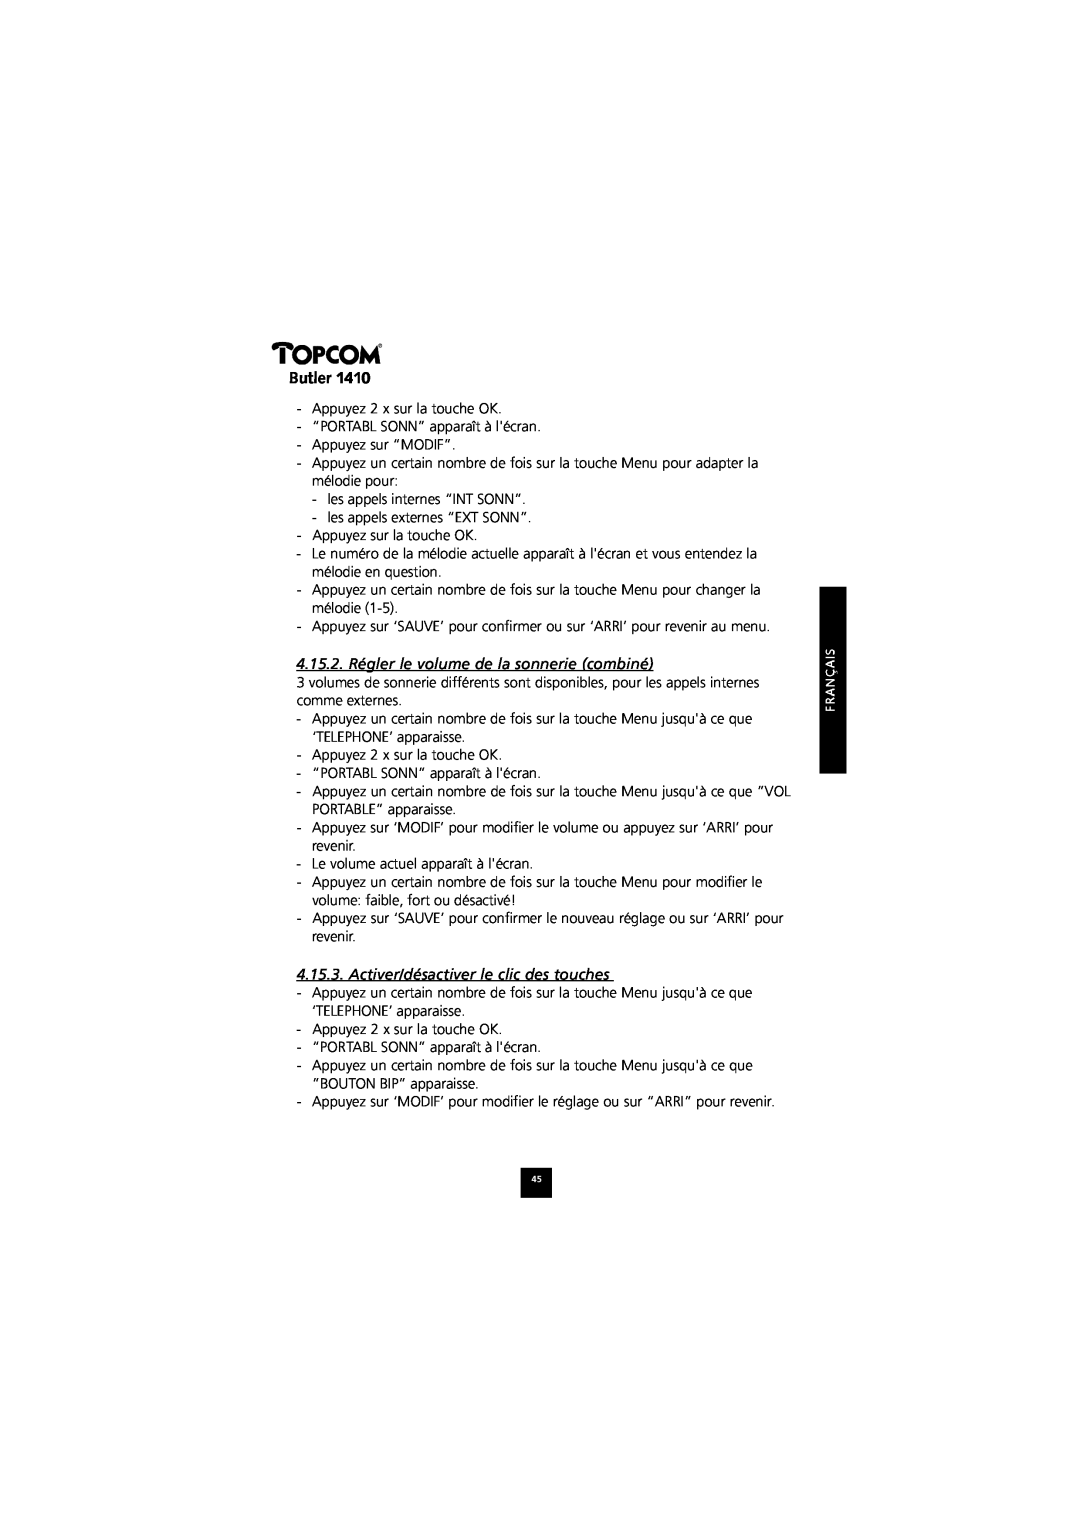 Topcom 1410 manual 4.15.2. Régler le volume de la sonnerie combiné, Activer/désactiver le clic des touches, Butler 